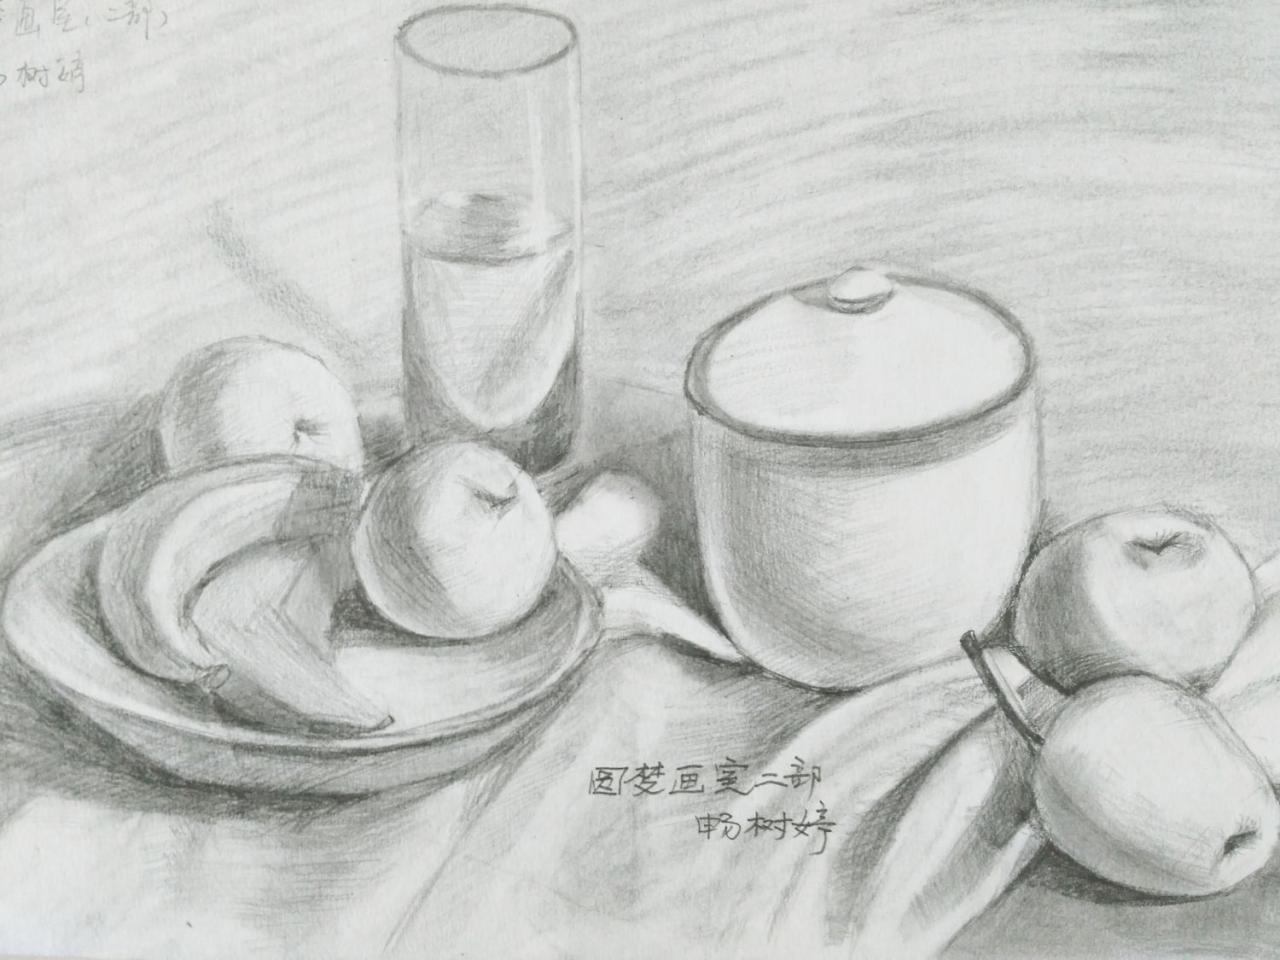 玻璃杯、梨、苹果、梨、香蕉、盘子 静物素描 畅树婷画